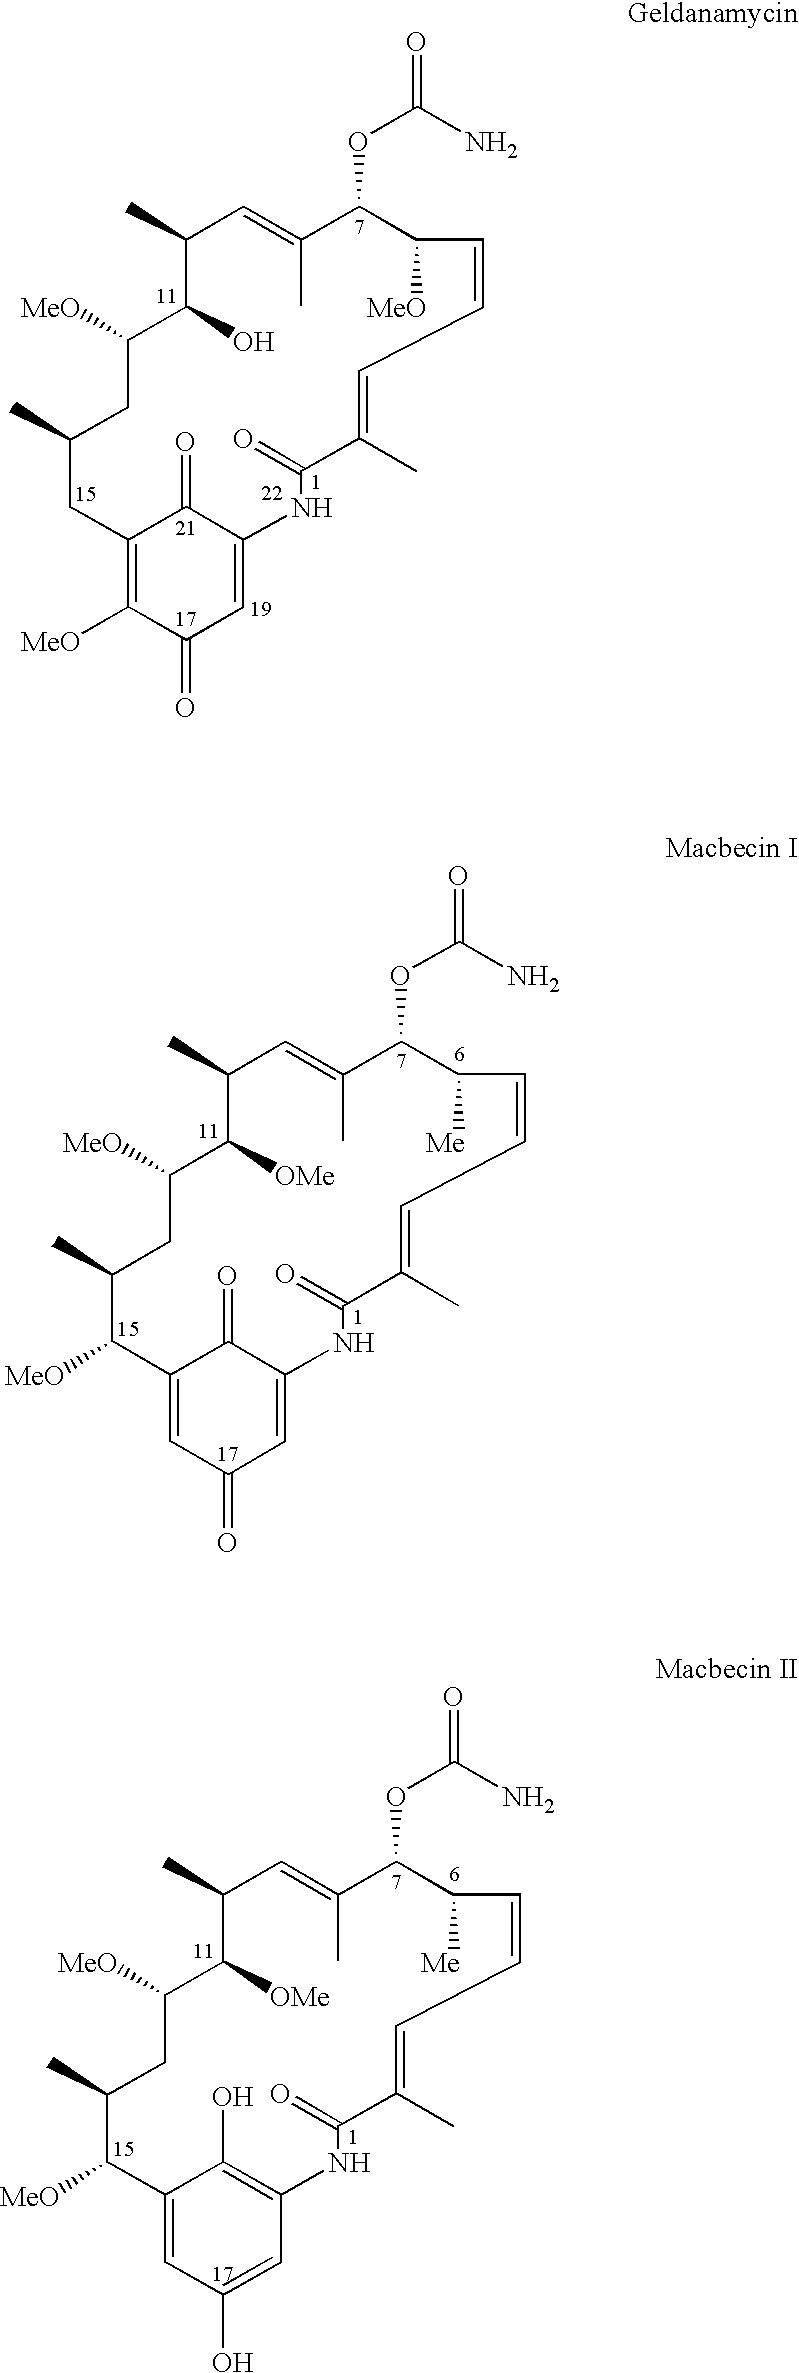 2-Desmethyl ansamycin compounds